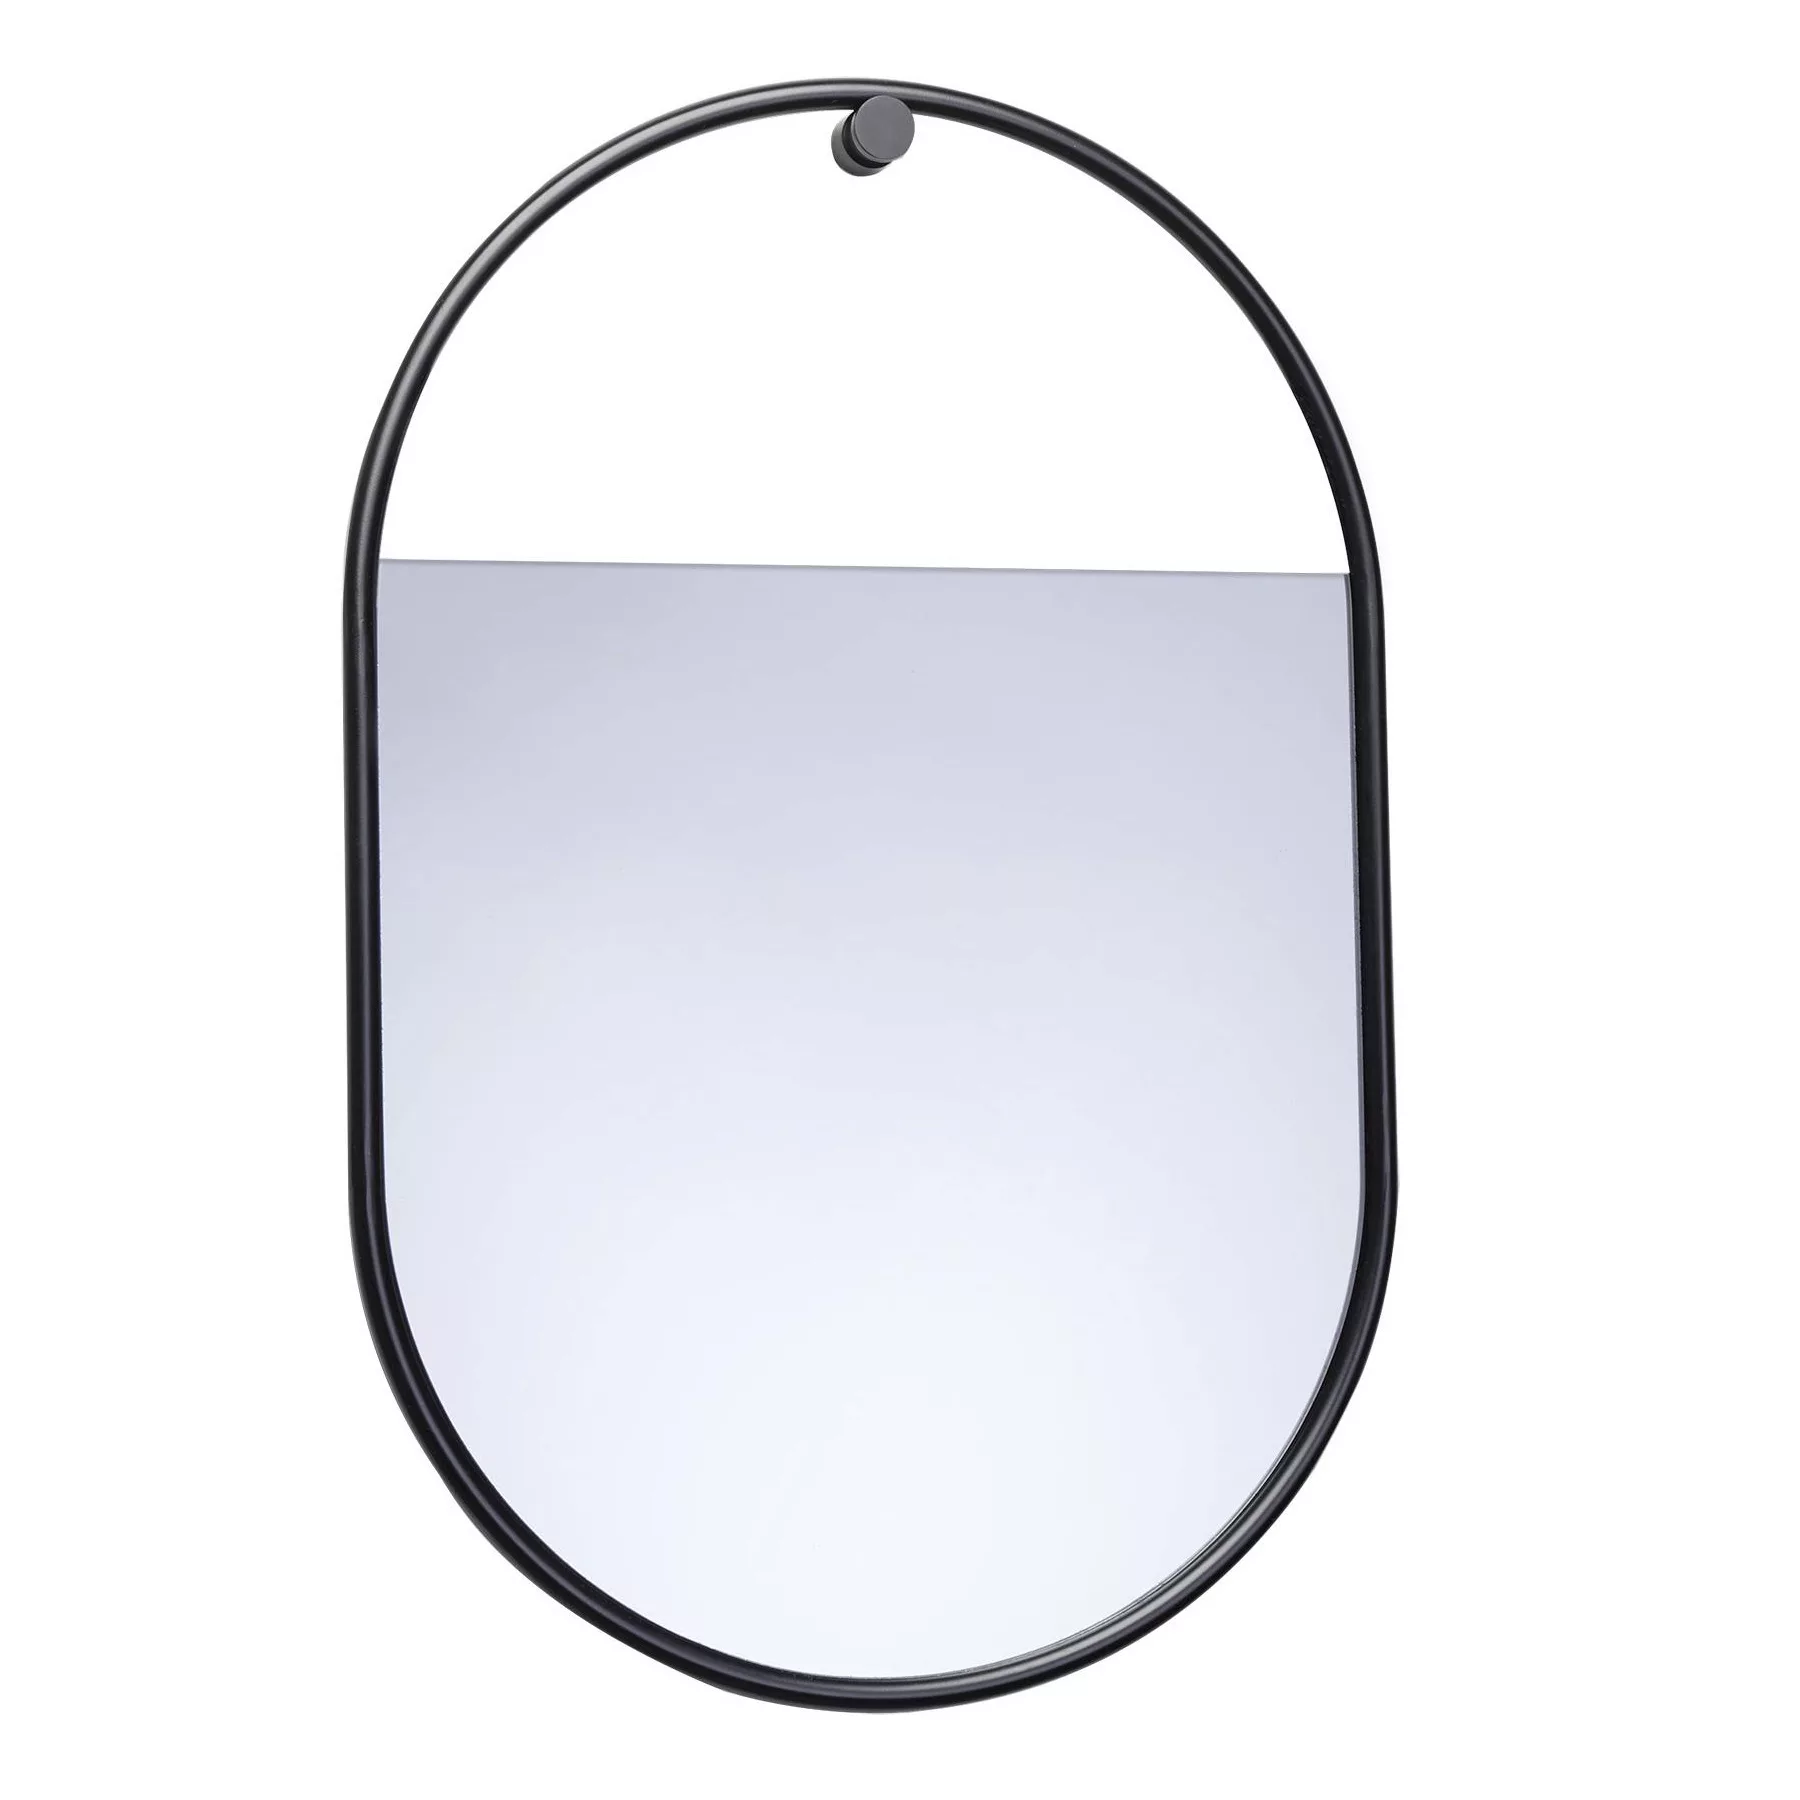 Northern - Peek Spiegel oval S - schwarz/BxH 40x60cm günstig online kaufen